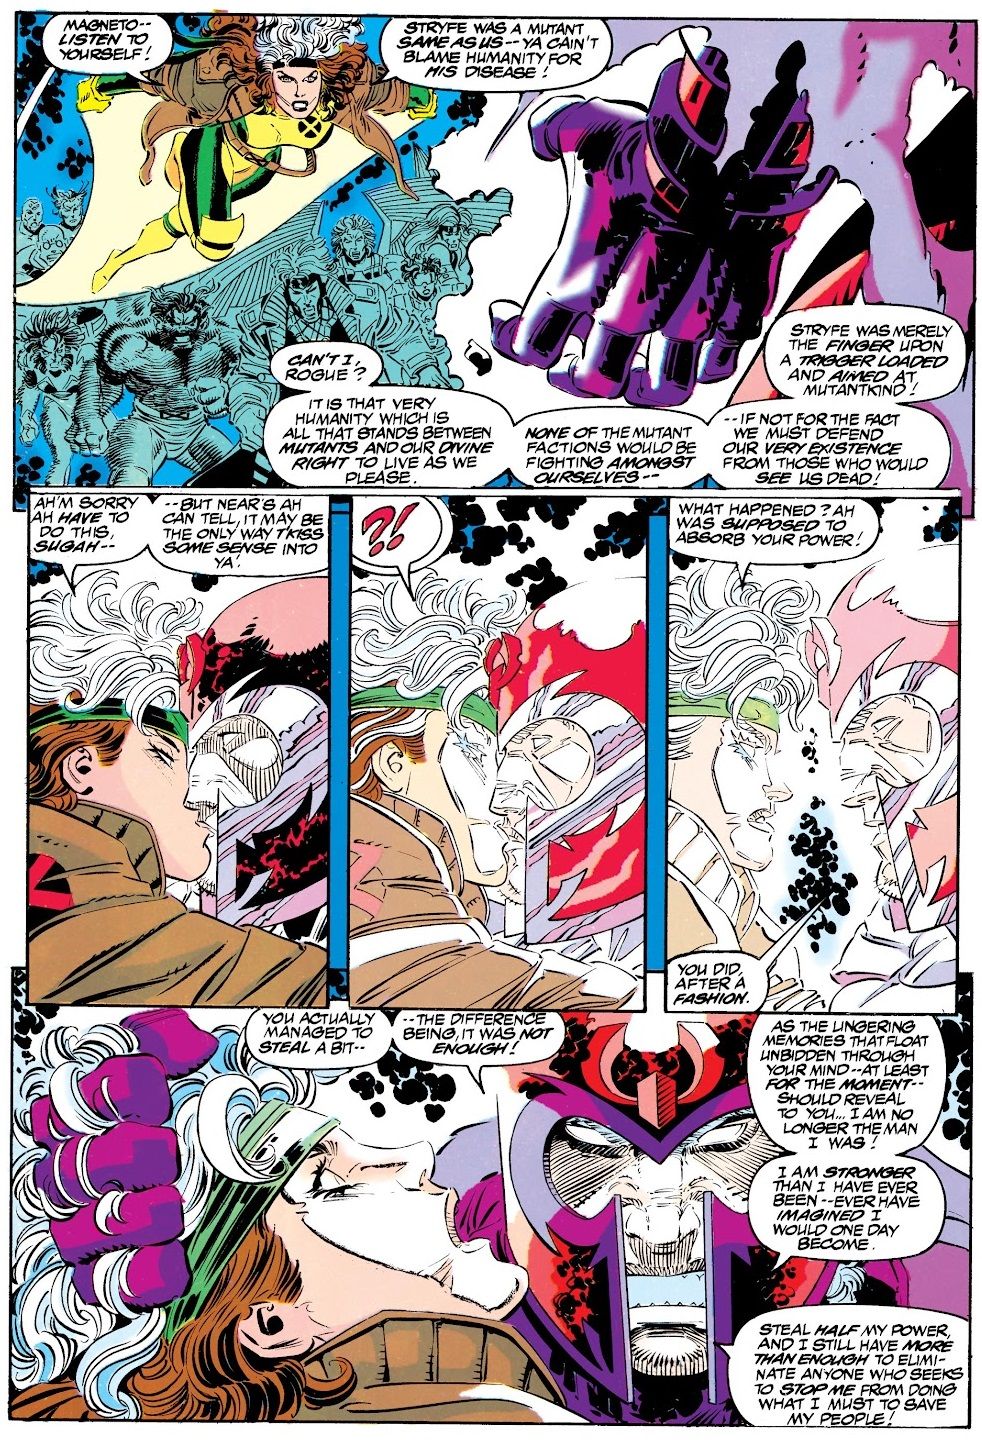 Когда они установили, что Магнето может коснуться Роуга в комиксах о Людях Икс?